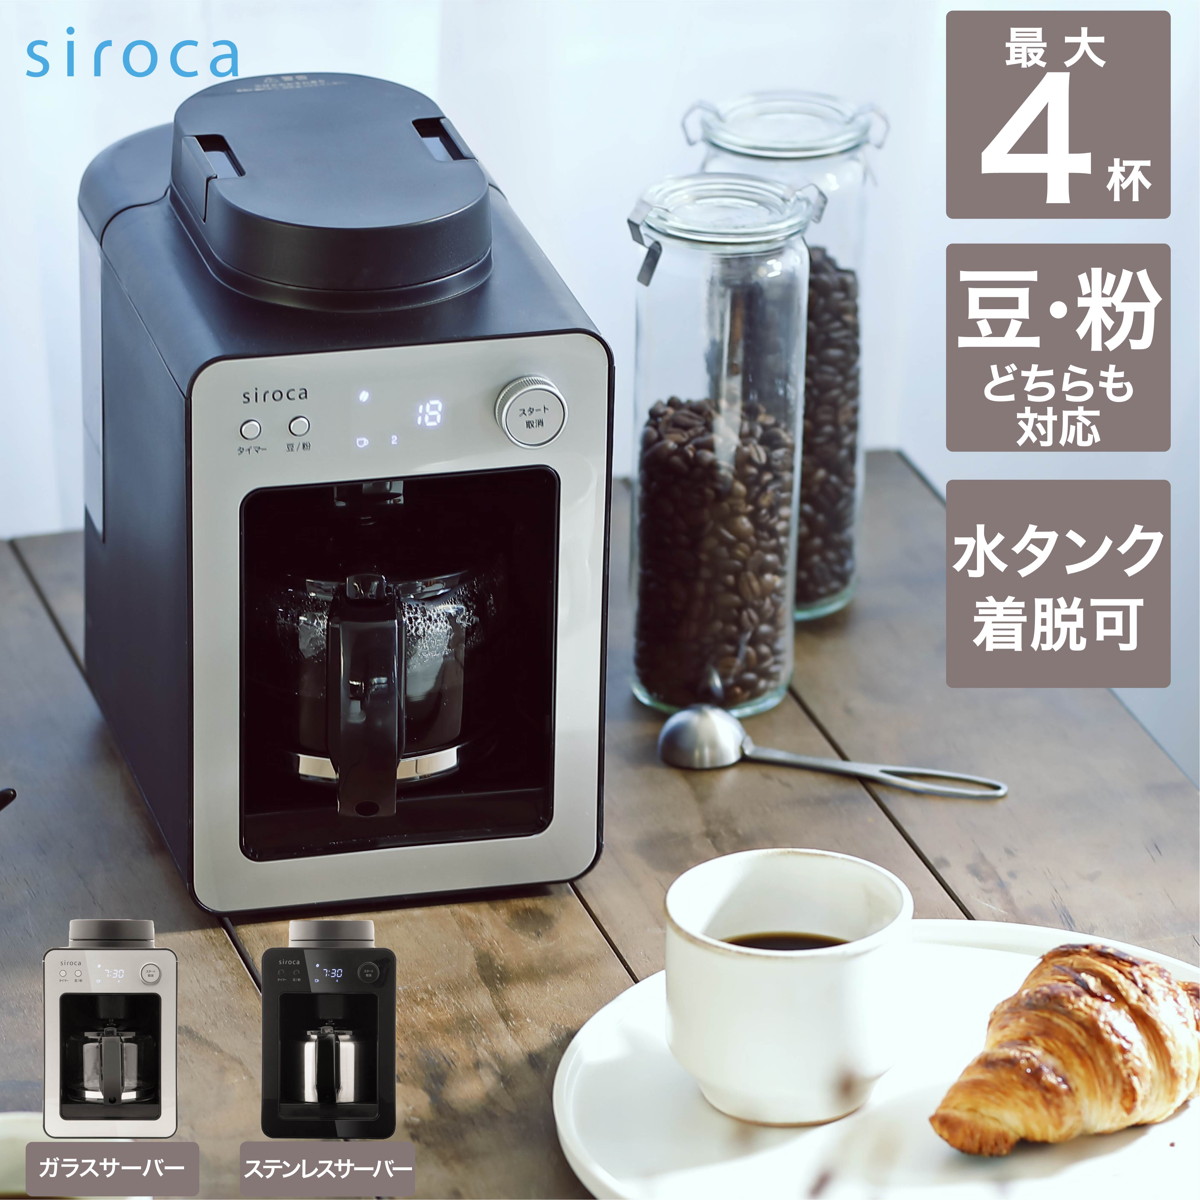 シロカ siroca 全自動コーヒーメーカー シルバー SC-A351(S)